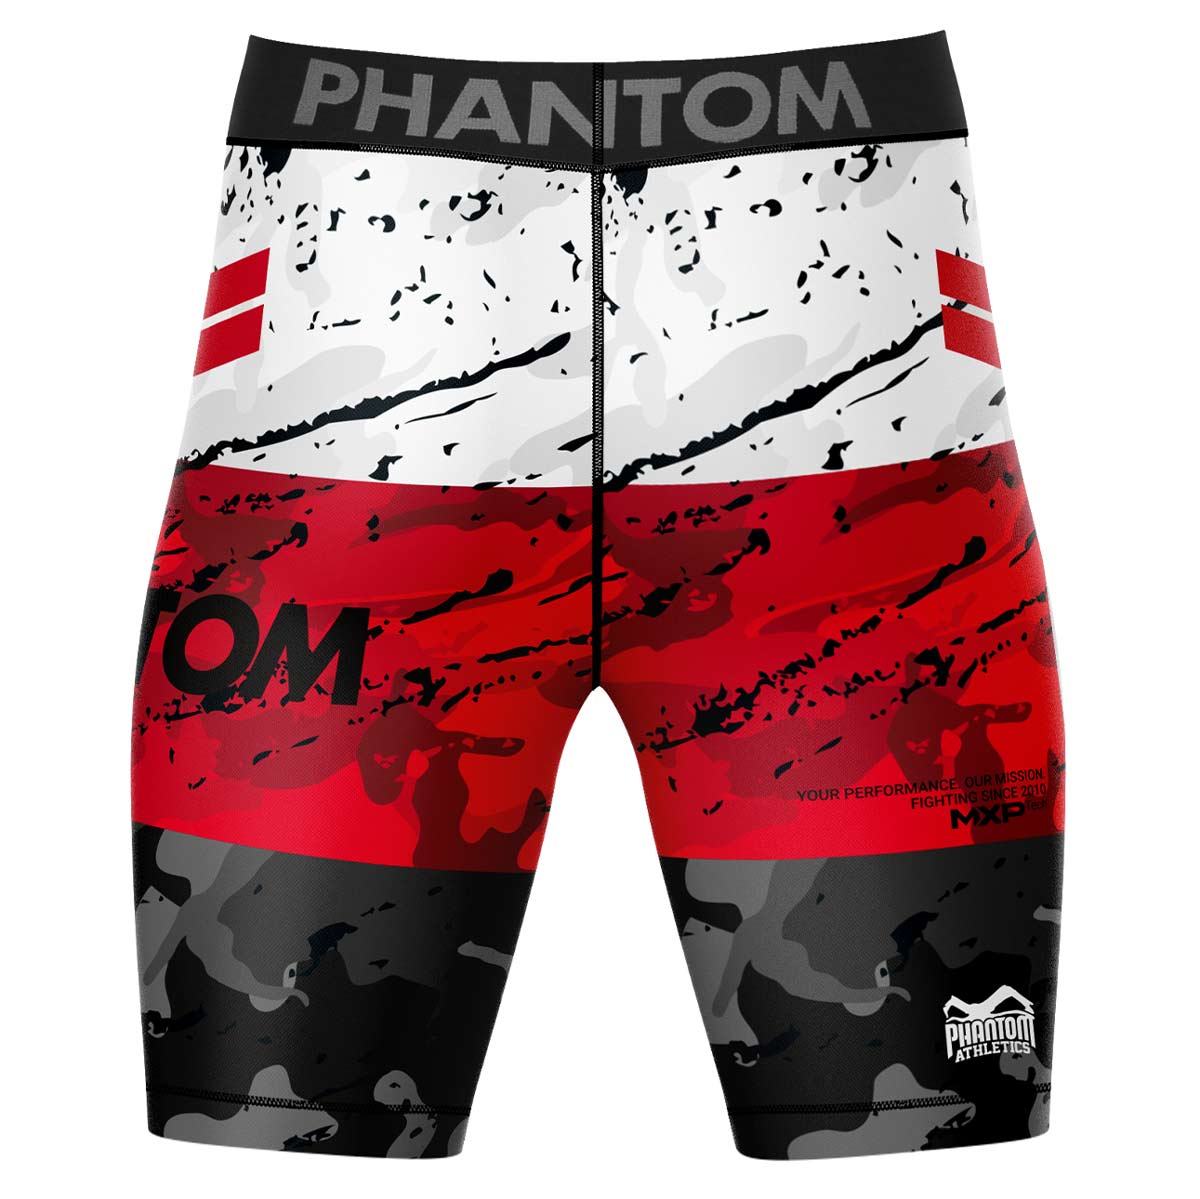 Phantom Compression Fightshorts in Rot/Schwarz/Weiß. Ultimativer Komfort und Bewegungsfreiheit.  Ideal für deinen Kampfsport. 